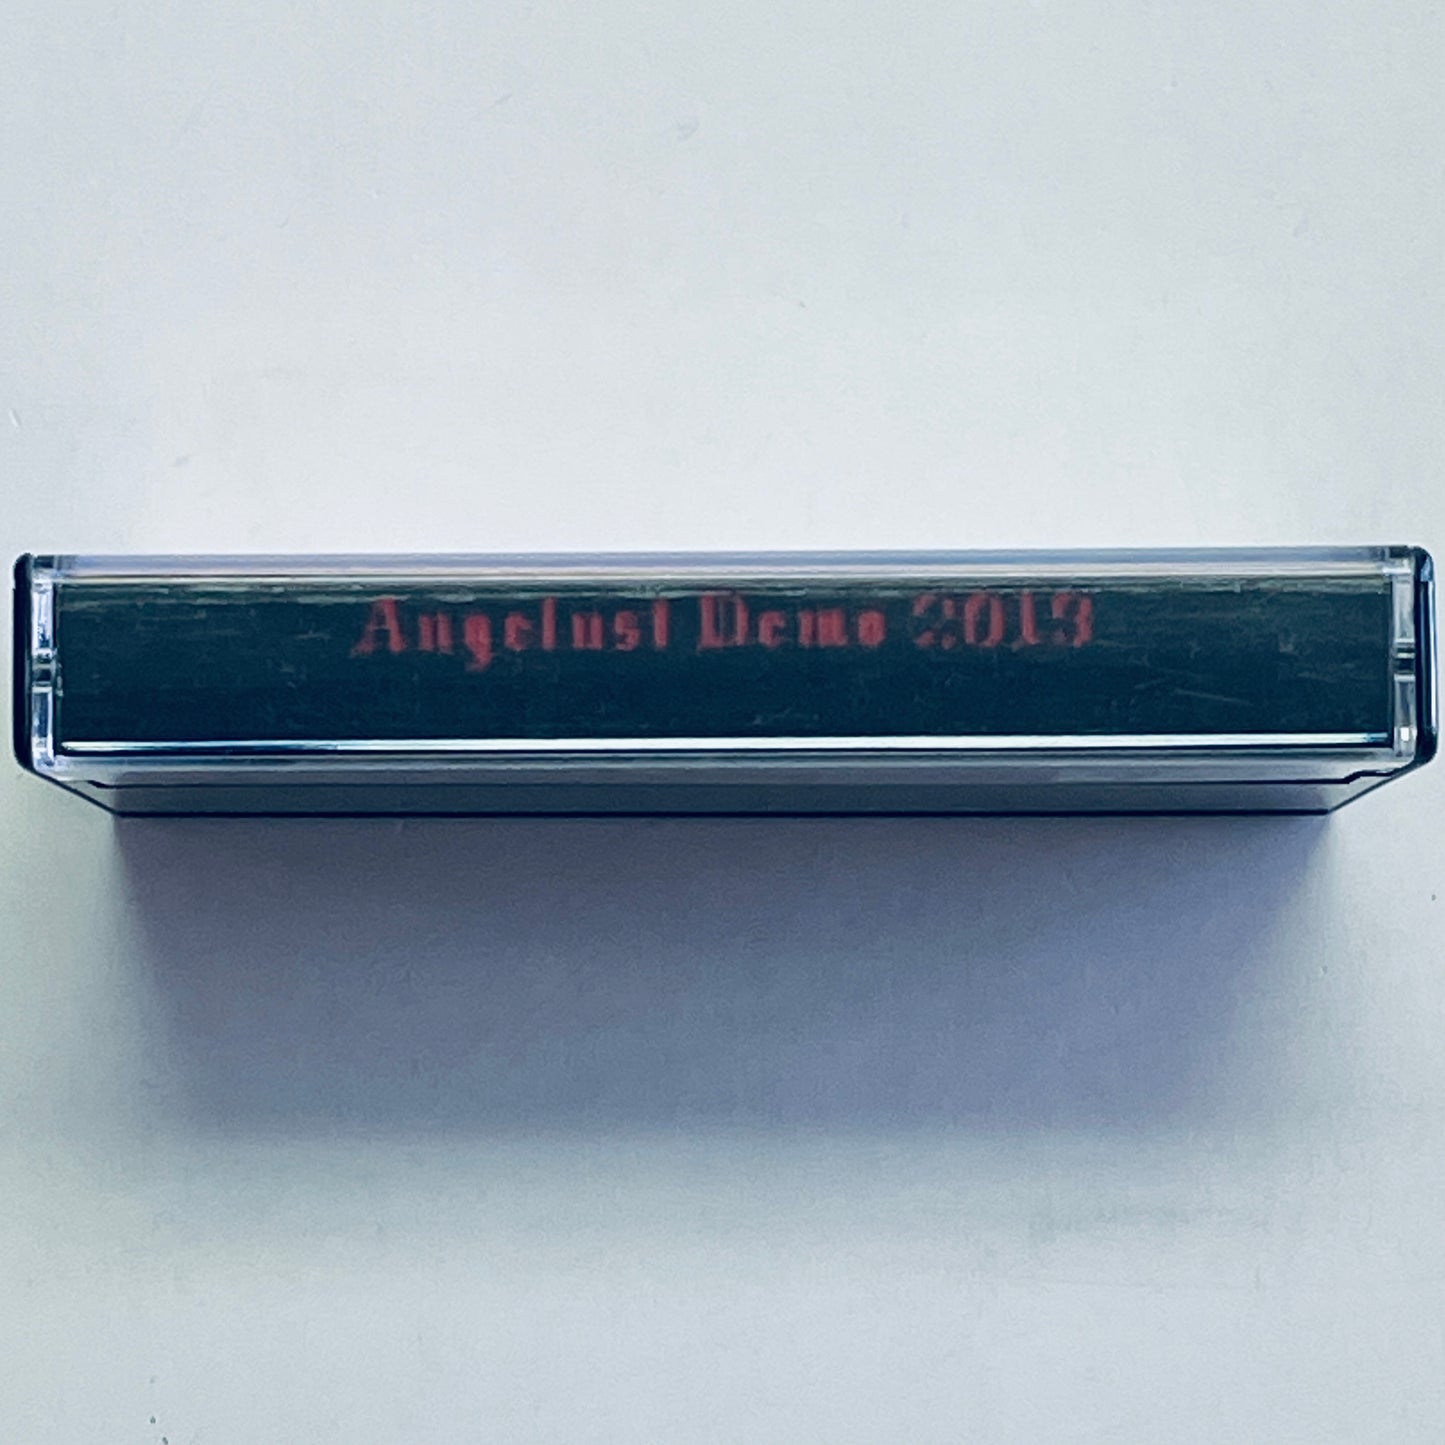 Angelust – Demo 2013 cassette tape (used)